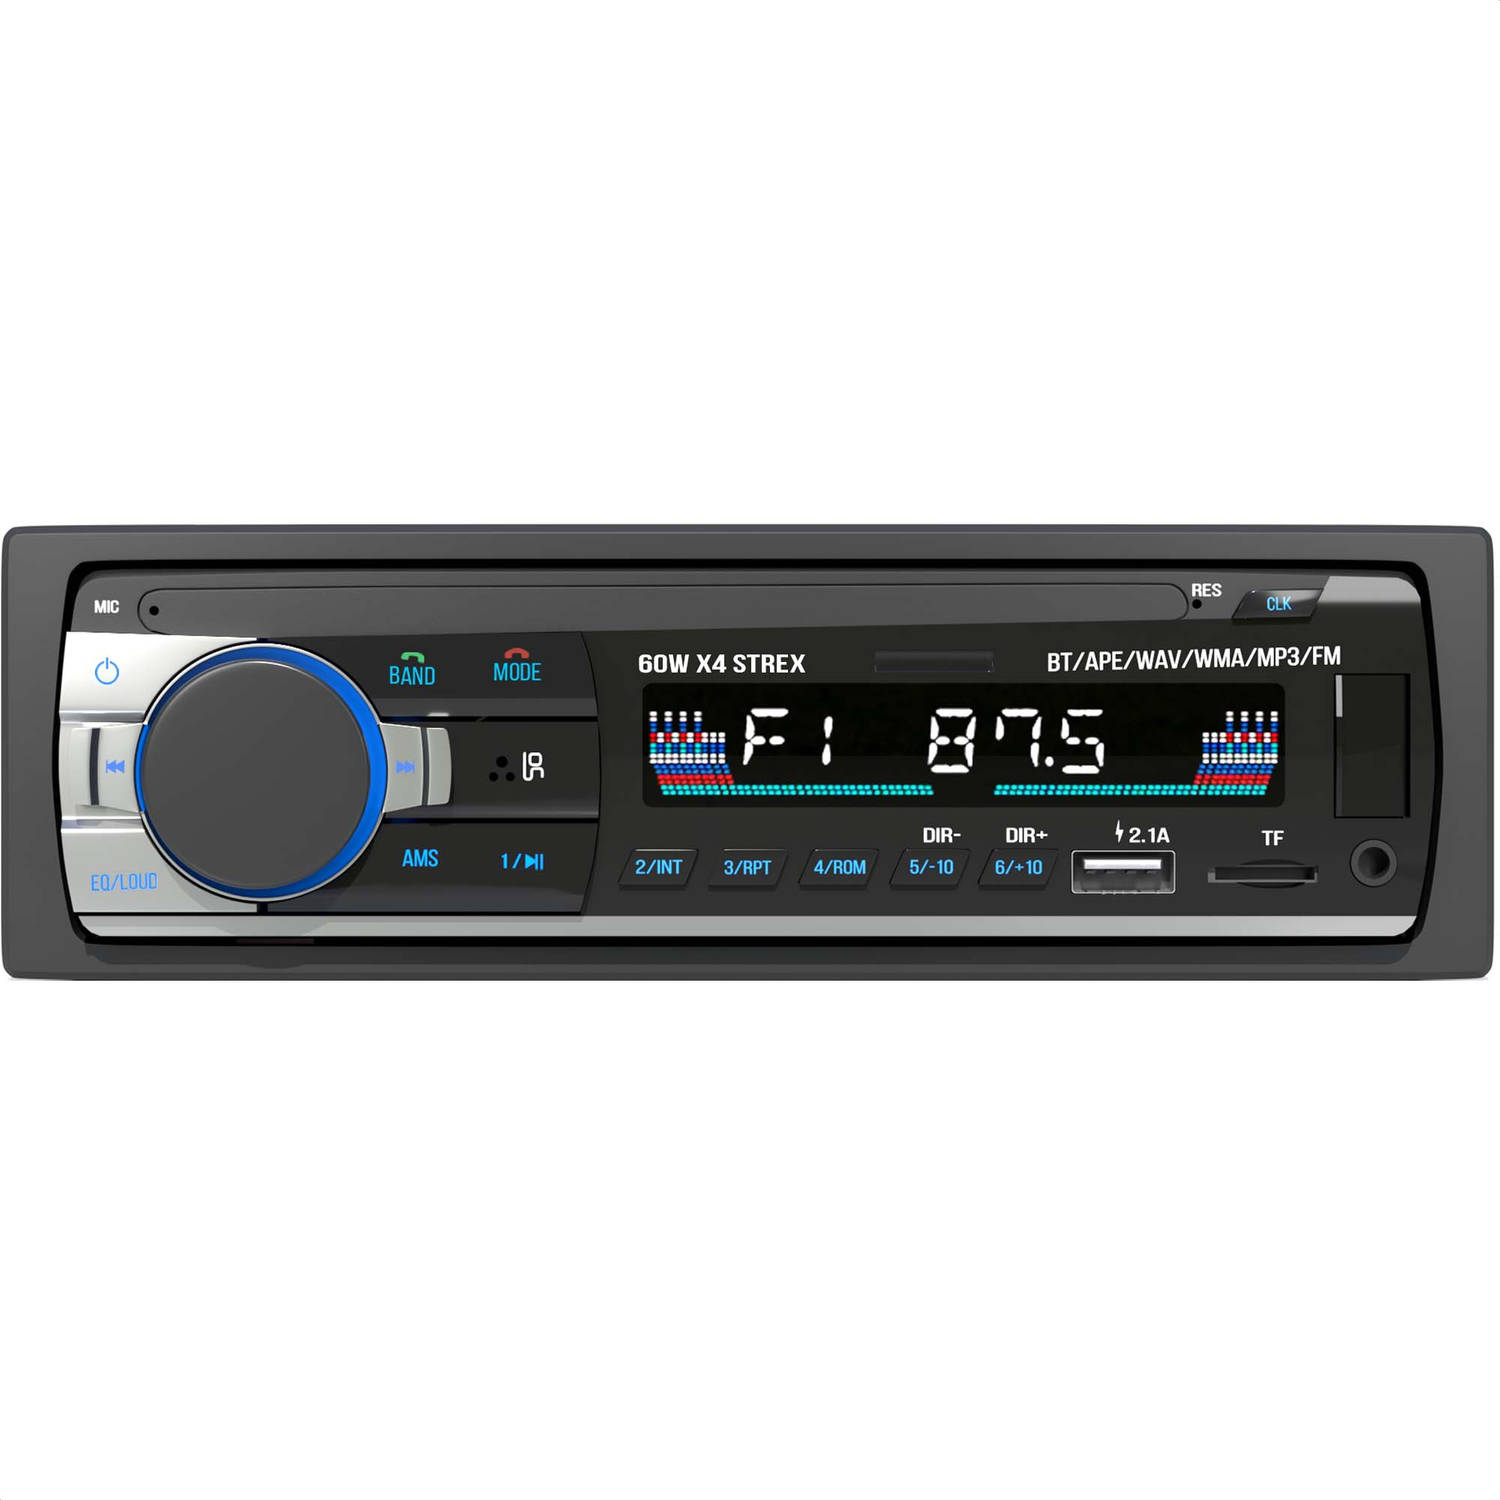 Pickering discretie Huisdieren Strex Autoradio met Bluetooth voor alle auto's - USB, AUX en Handsfree -  Afstandsbediening - Enkel DIN Auto Radio met | Blokker